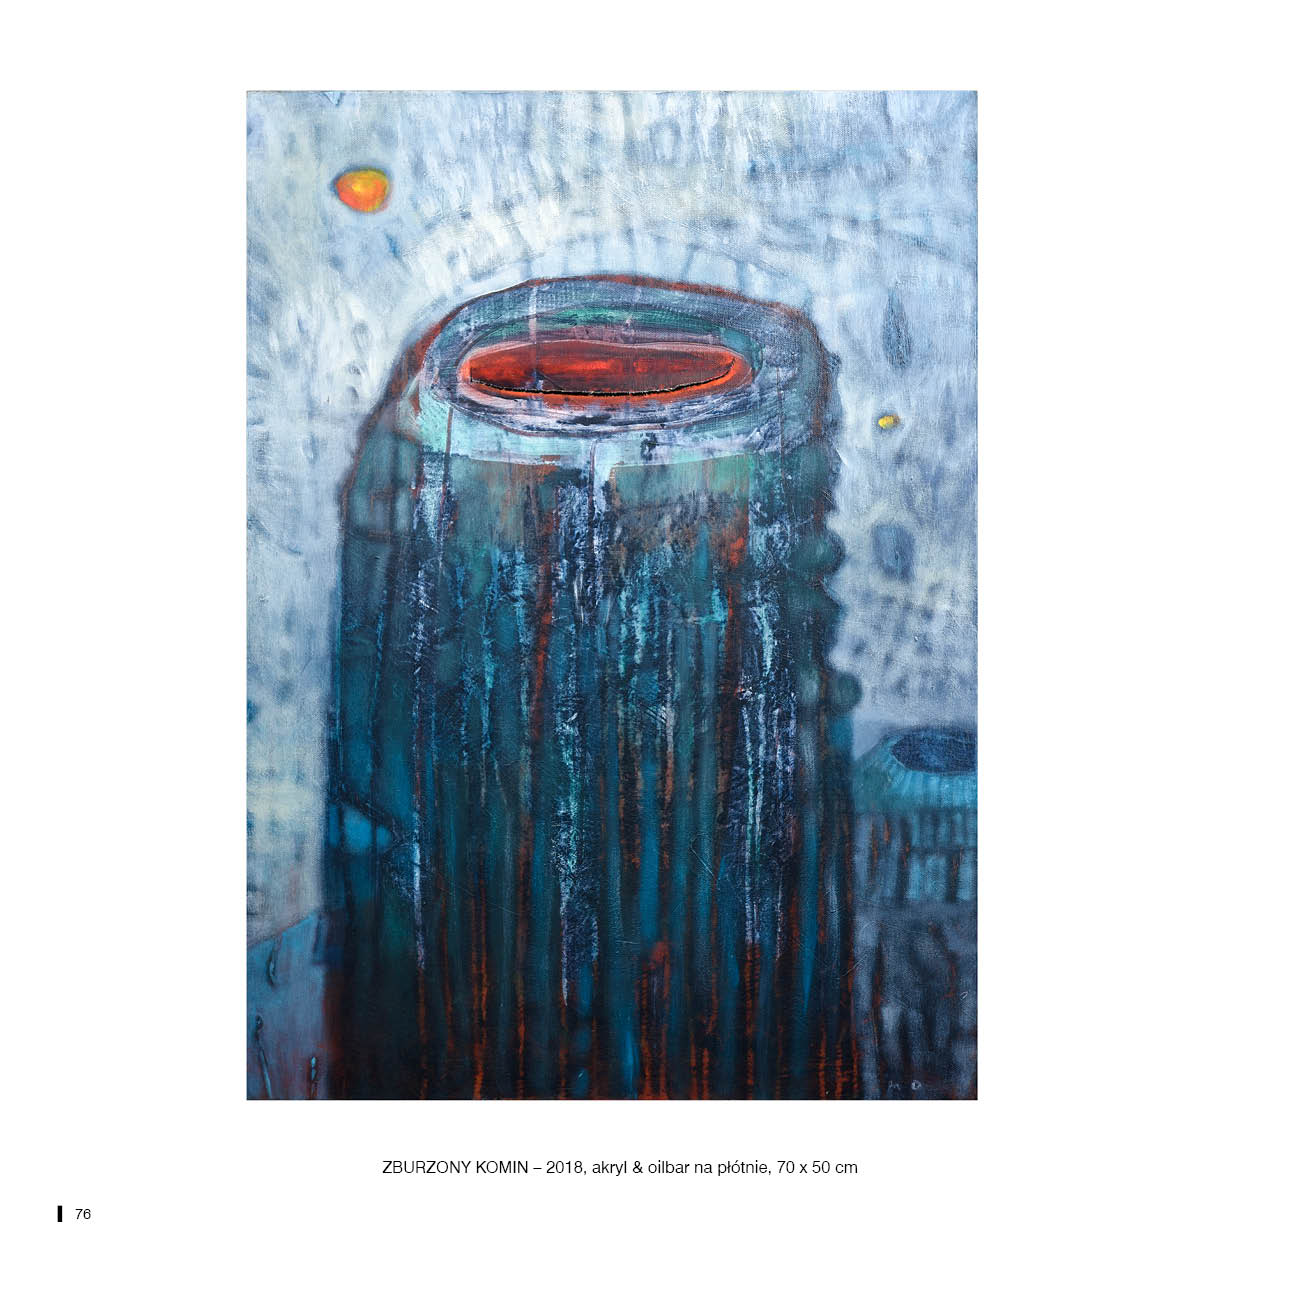 ZBURZONY KOMIN – 2018, akryl & oilbar na płótnie, 70 x 50 cm